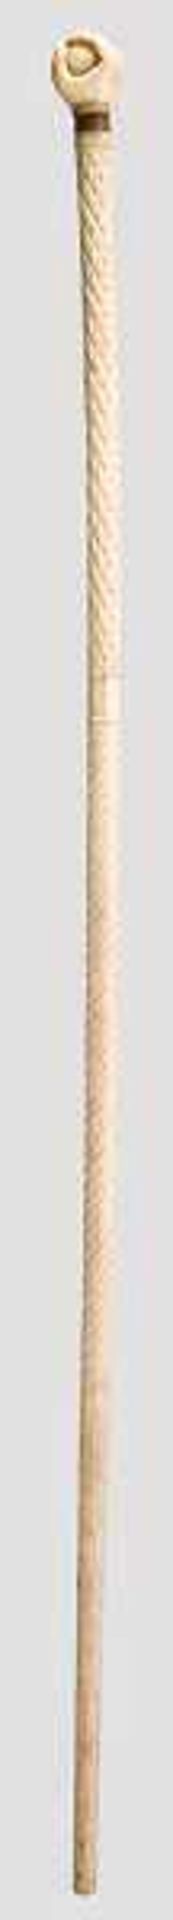 Gehstock aus Walbein, 19. Jhdt. Beschnitzter Elfenbeinknauf in Form einer Hand, die eine Kugel